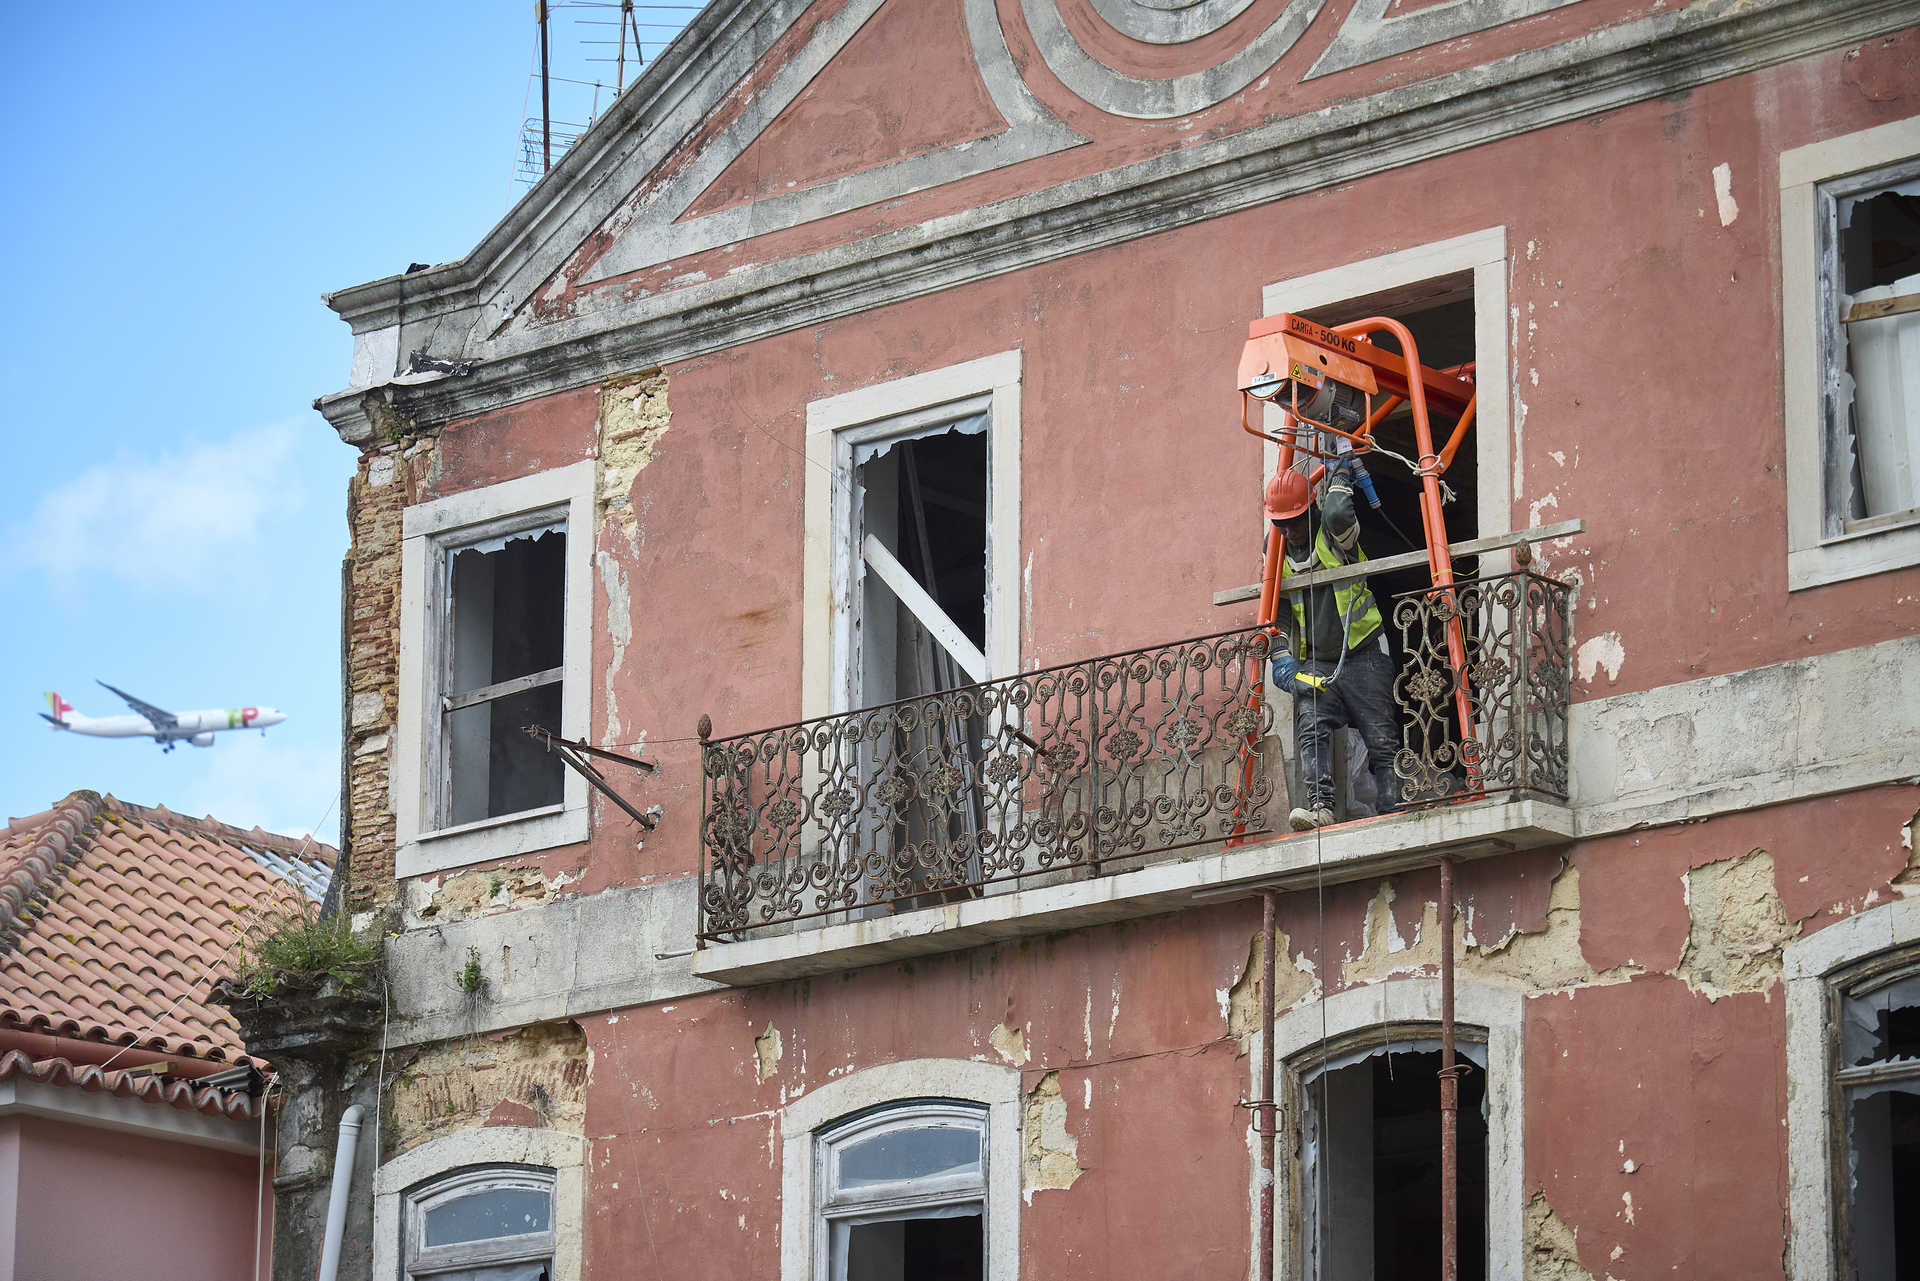 Aluguéis em Lisboa estão mais do que o dobro no resto de Portugal